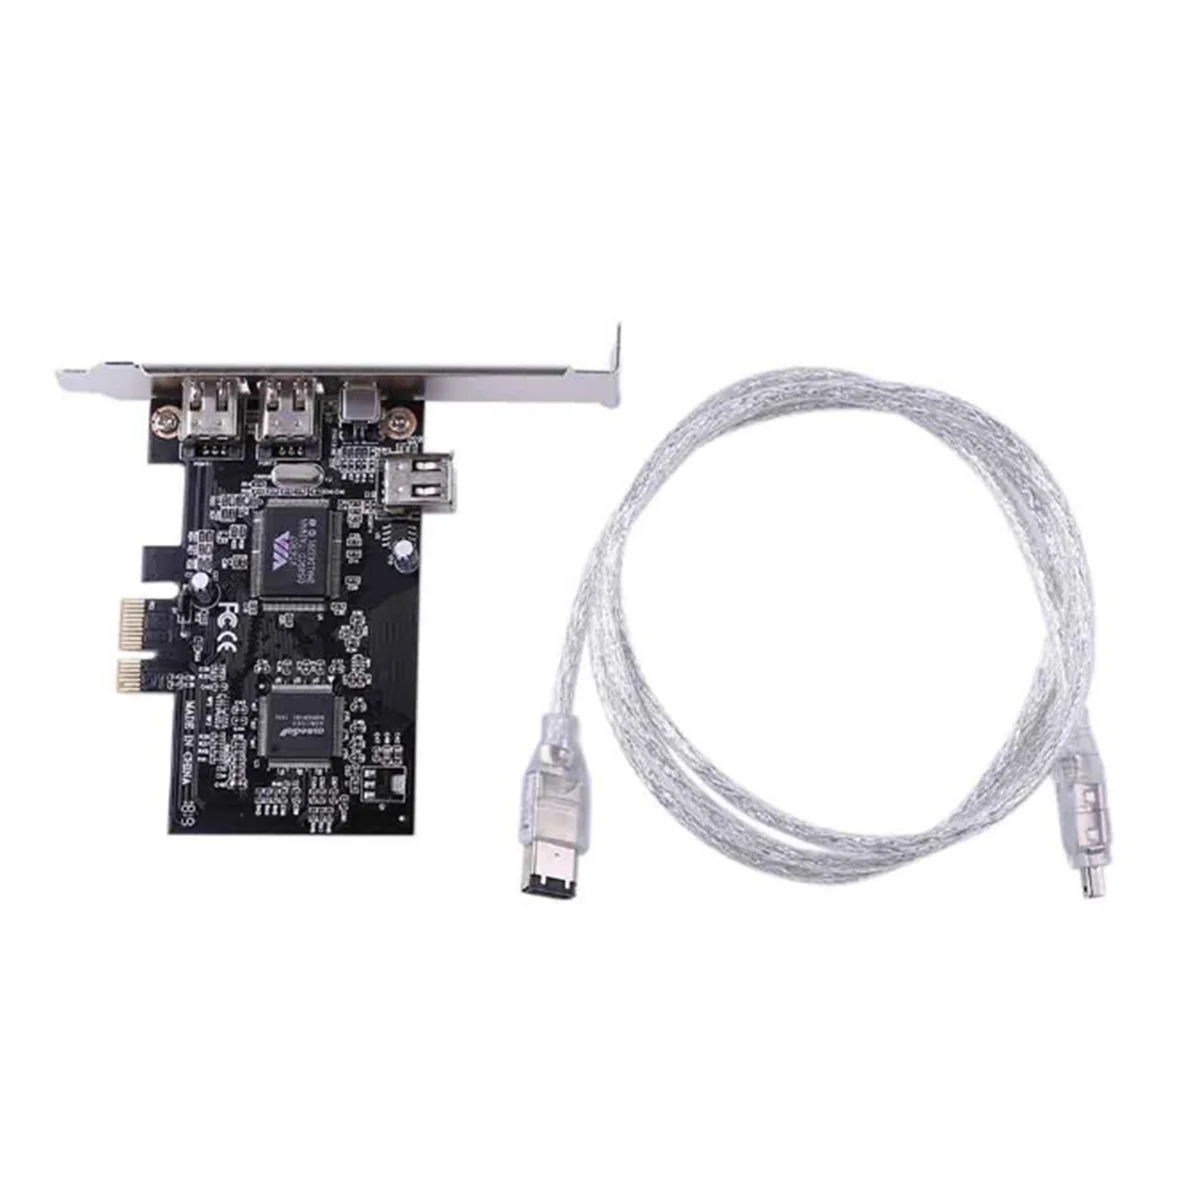 

PCIe 4 порта (3x6pin + 1x4pin) Firewire 800 IEEE 1394 высокоскоростная карта адаптера 800 Мбит/с бесплатно 6-контактный к 4-контактному кабелю